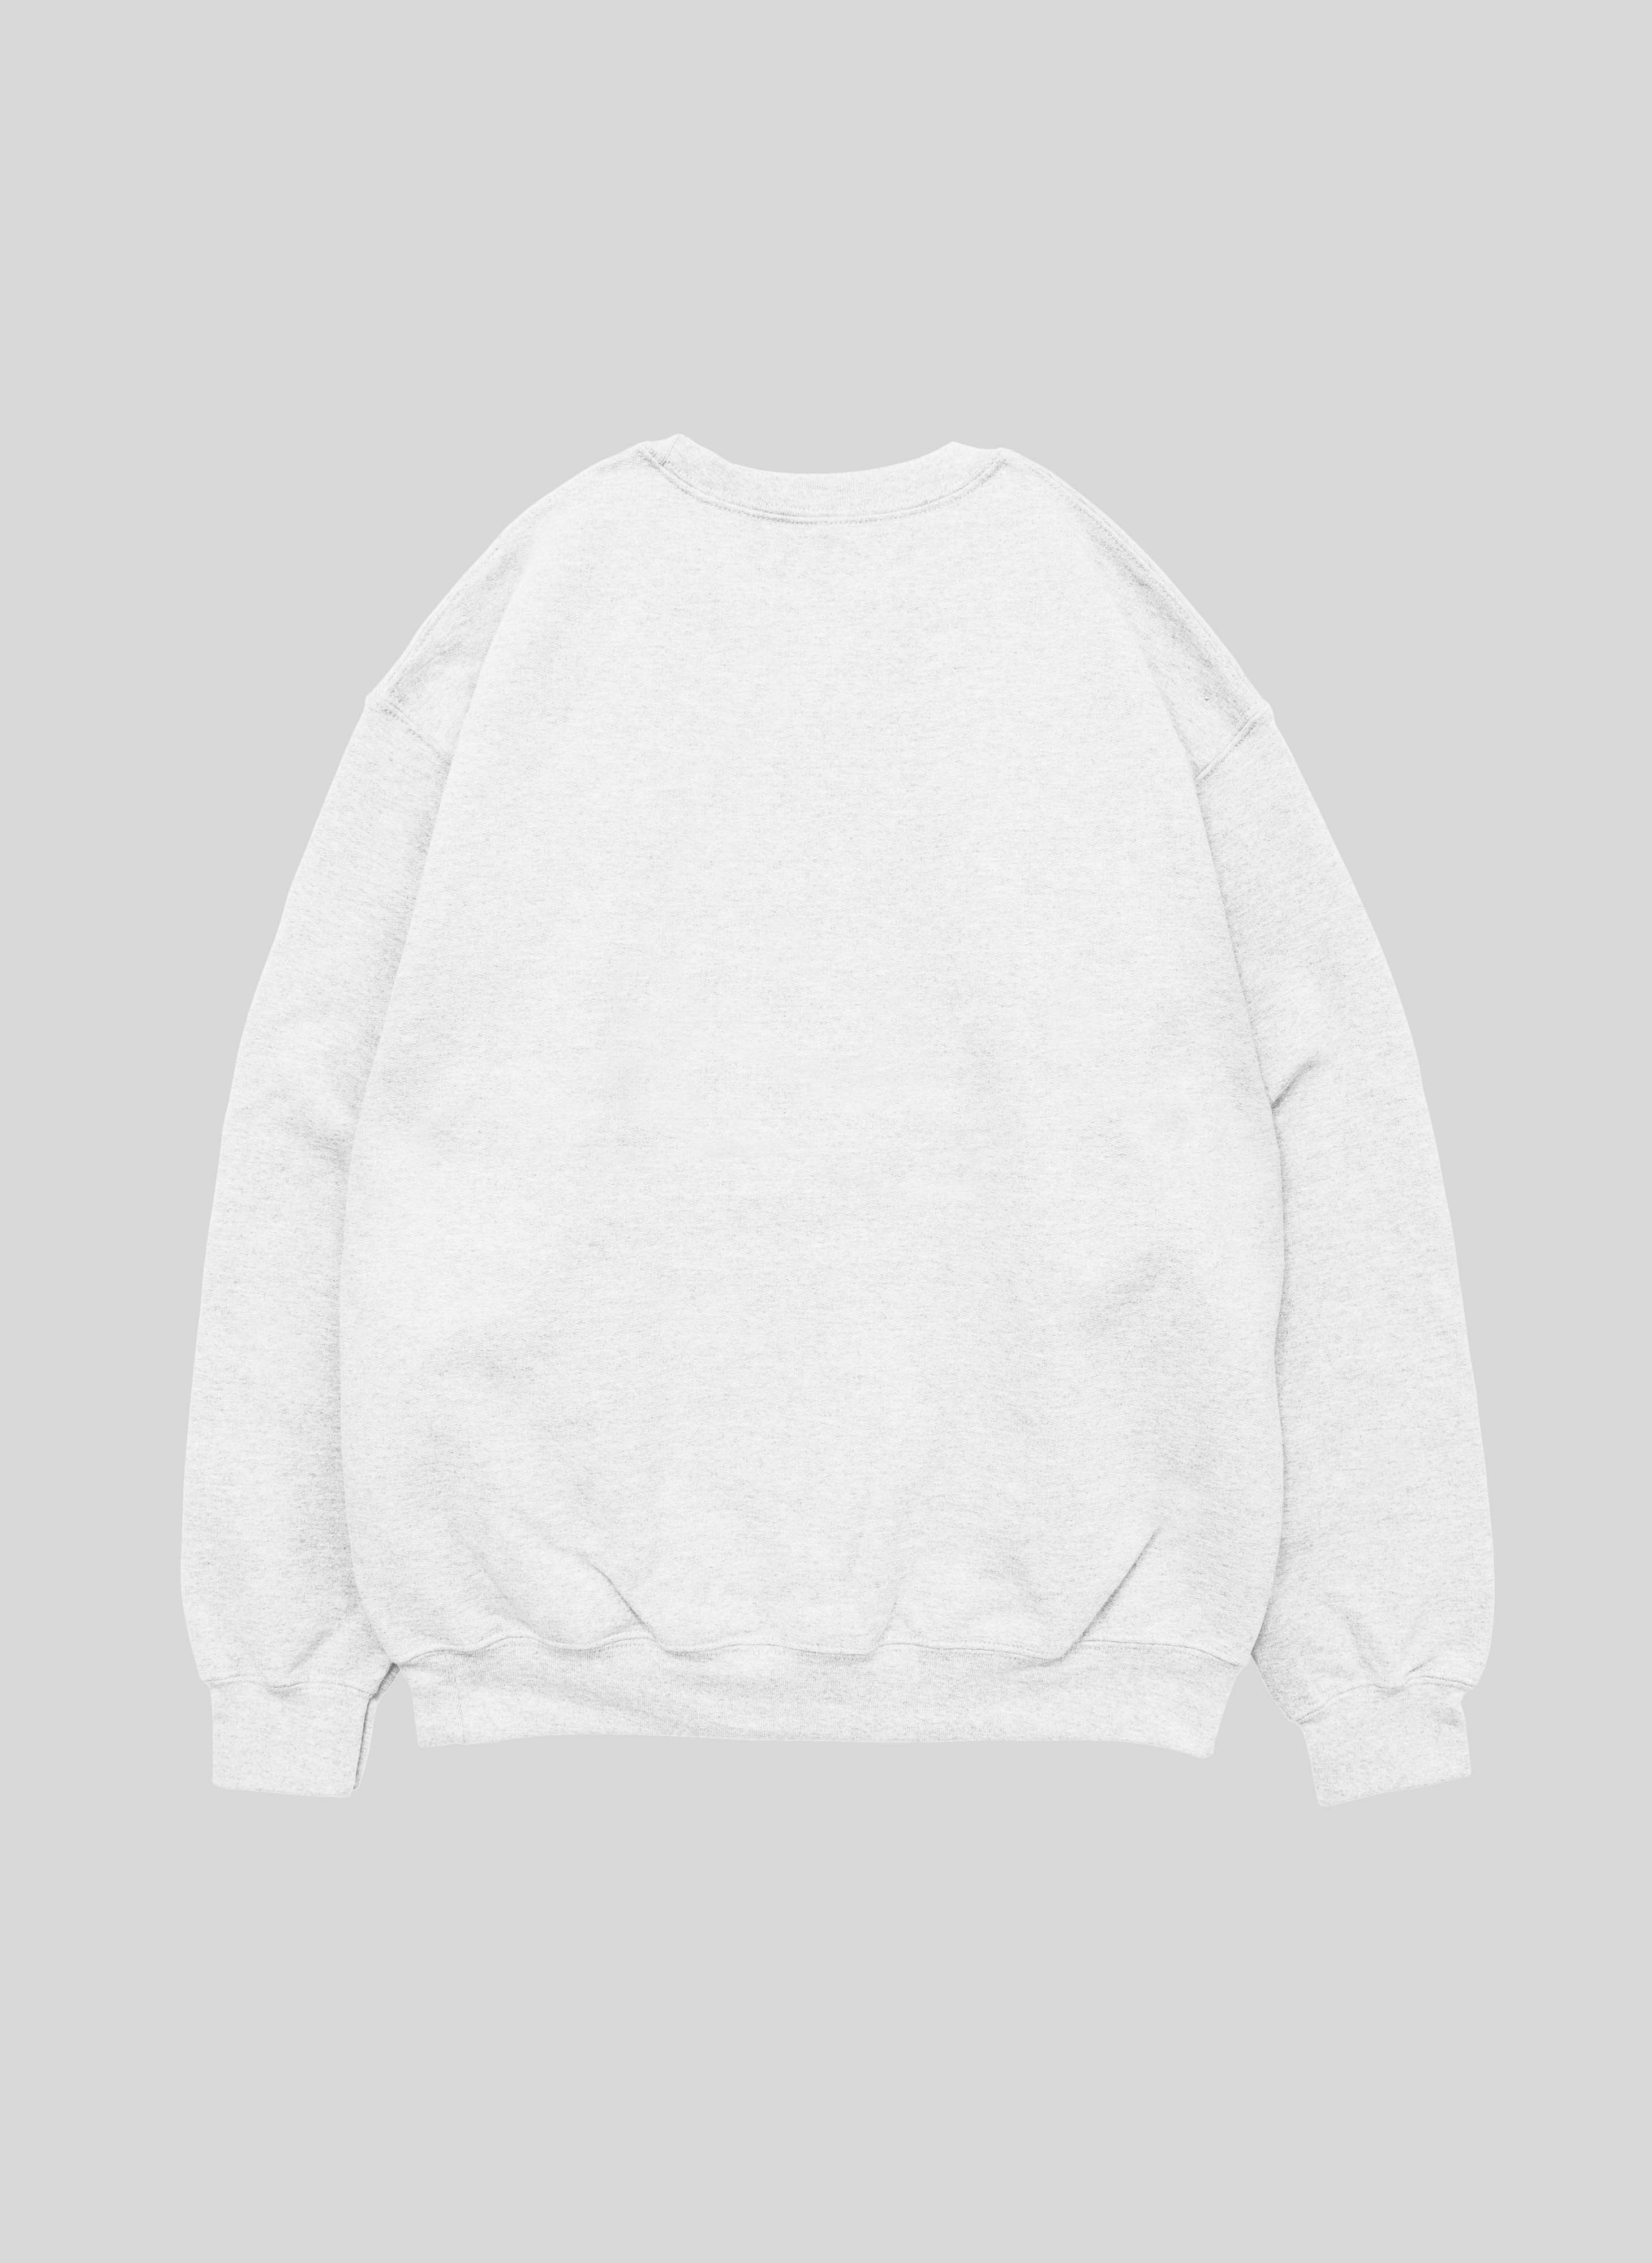 Harrys Styles Pleasing White Unisex Sweatshirt | Sale